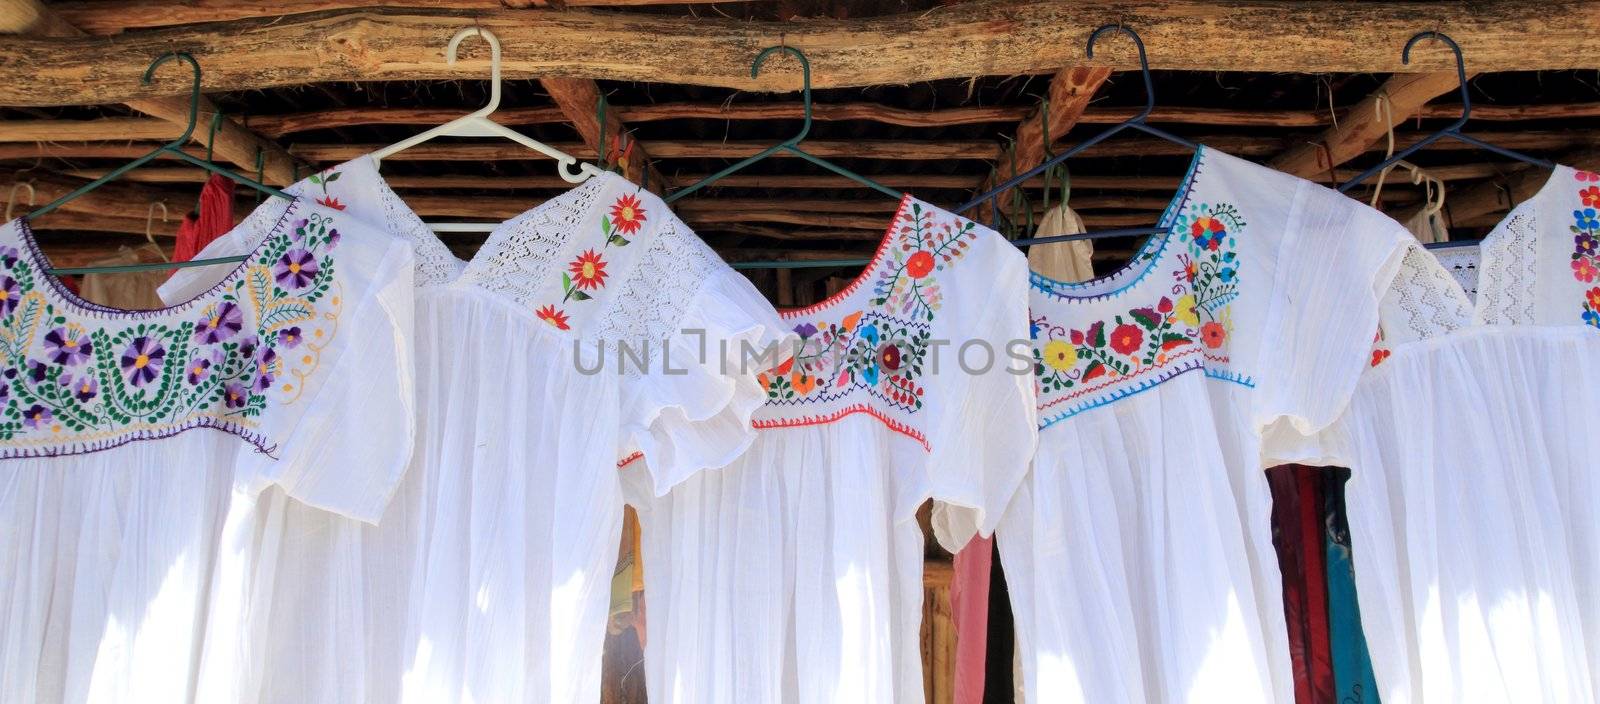 chiapas mayan white dress embroided flowers by lunamarina